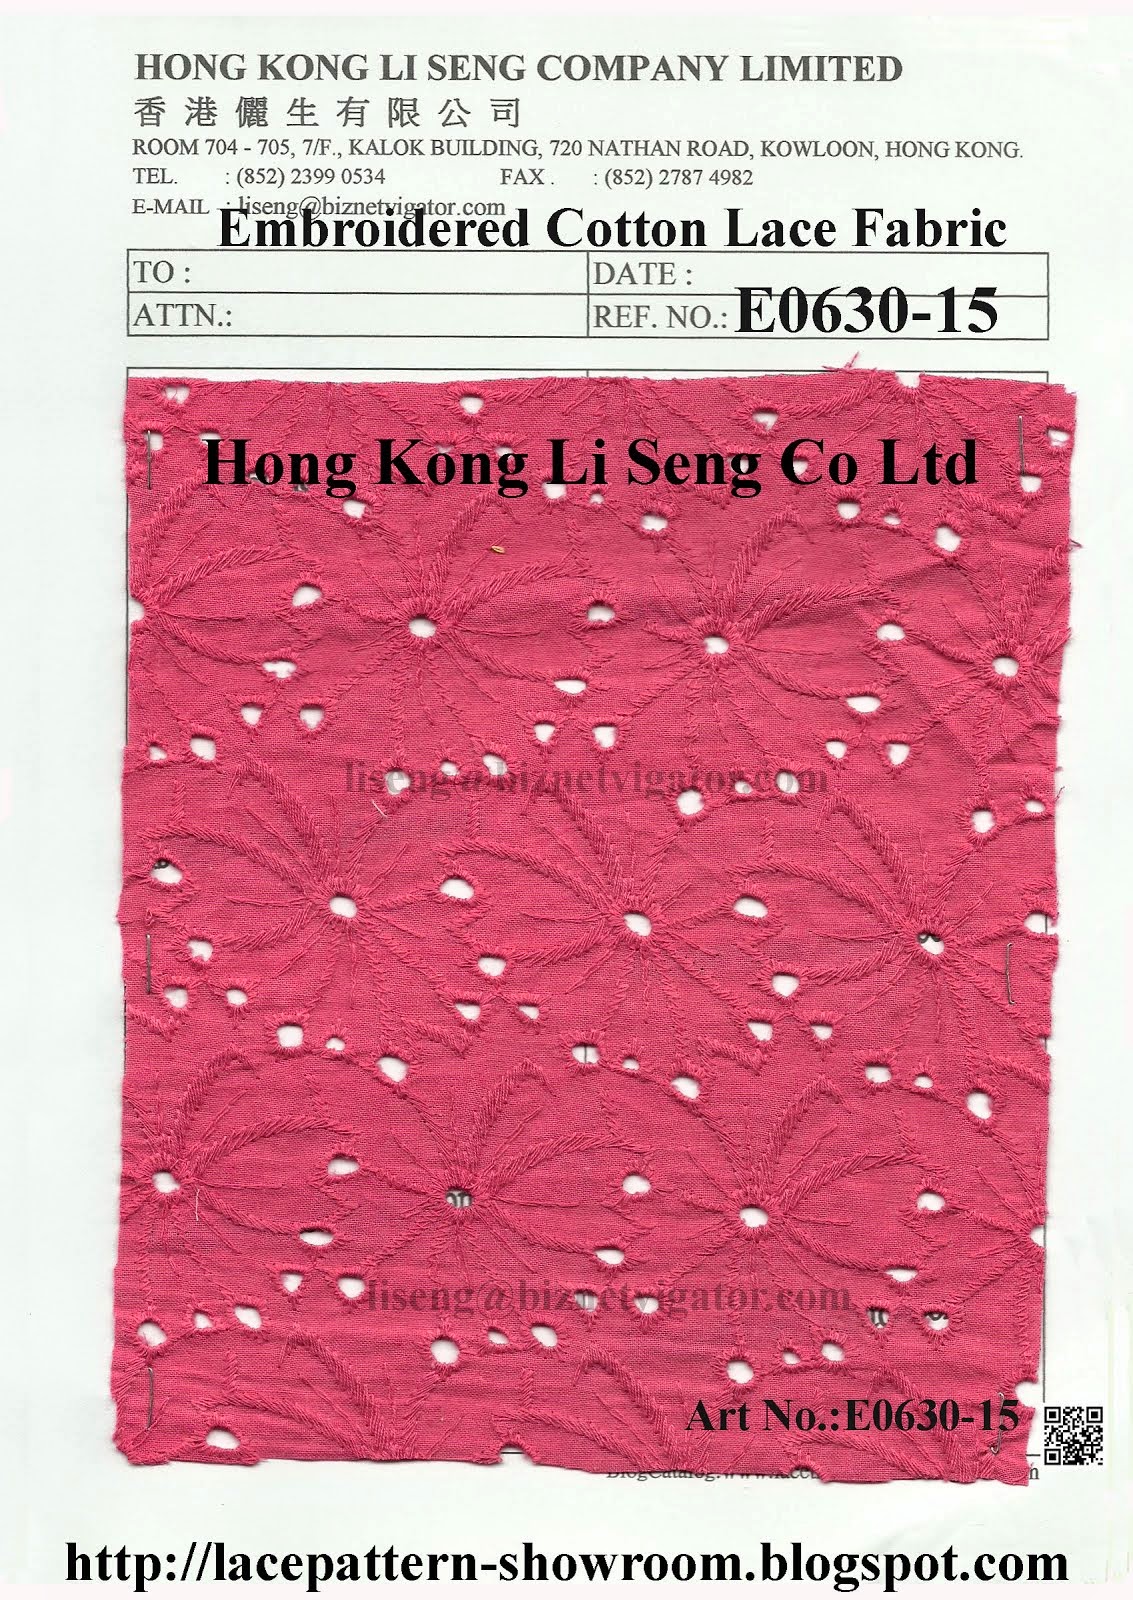 New Pattern Emb Cotton Lace Fabric Manufacturer Wholesaler Supplier - Hong Kong Li Seng Co Ltd